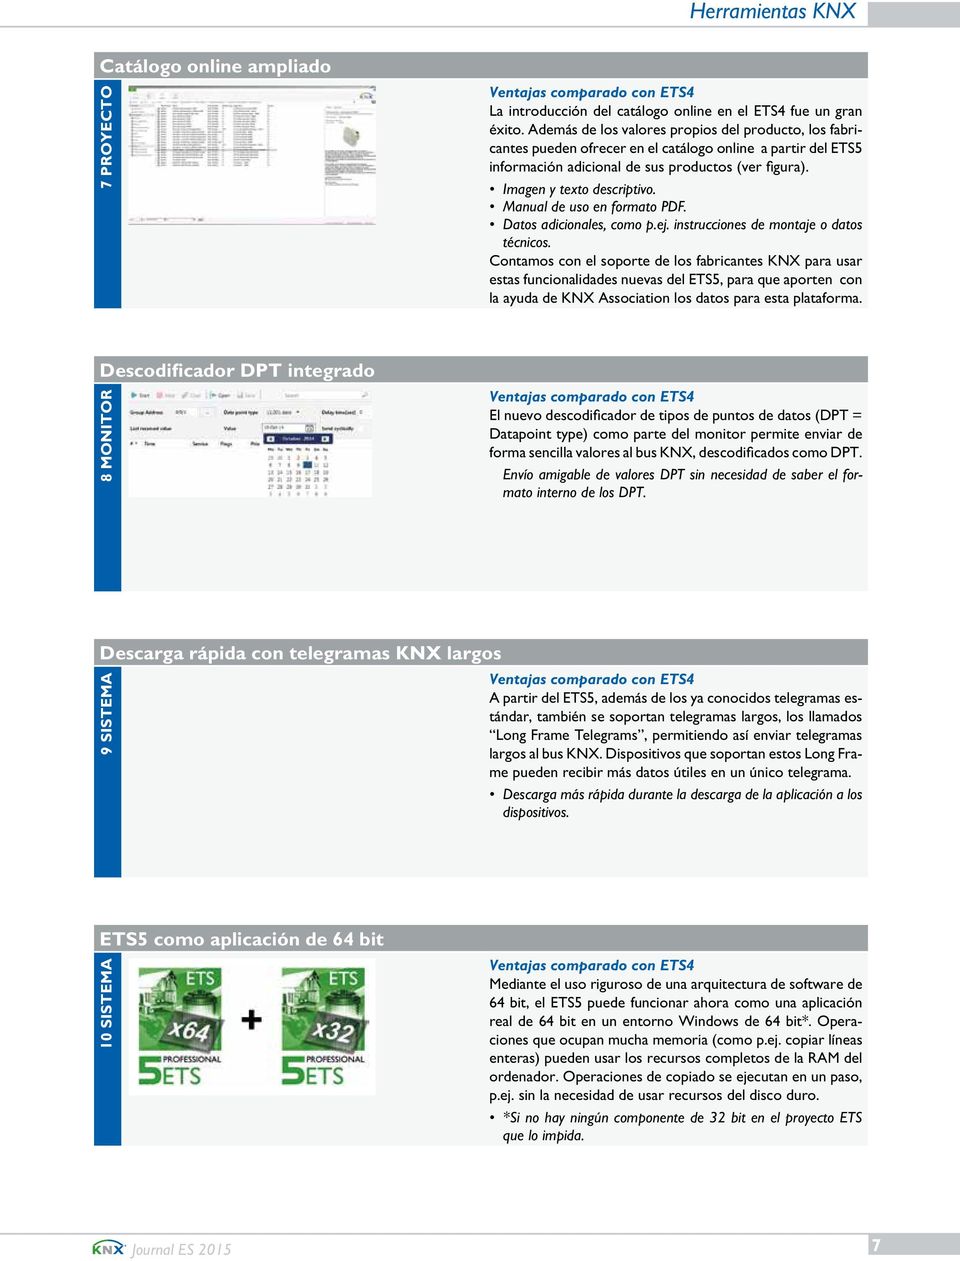 Manual de uso en formato PDF. Datos adicionales, como p.ej. instrucciones de montaje o datos técnicos.